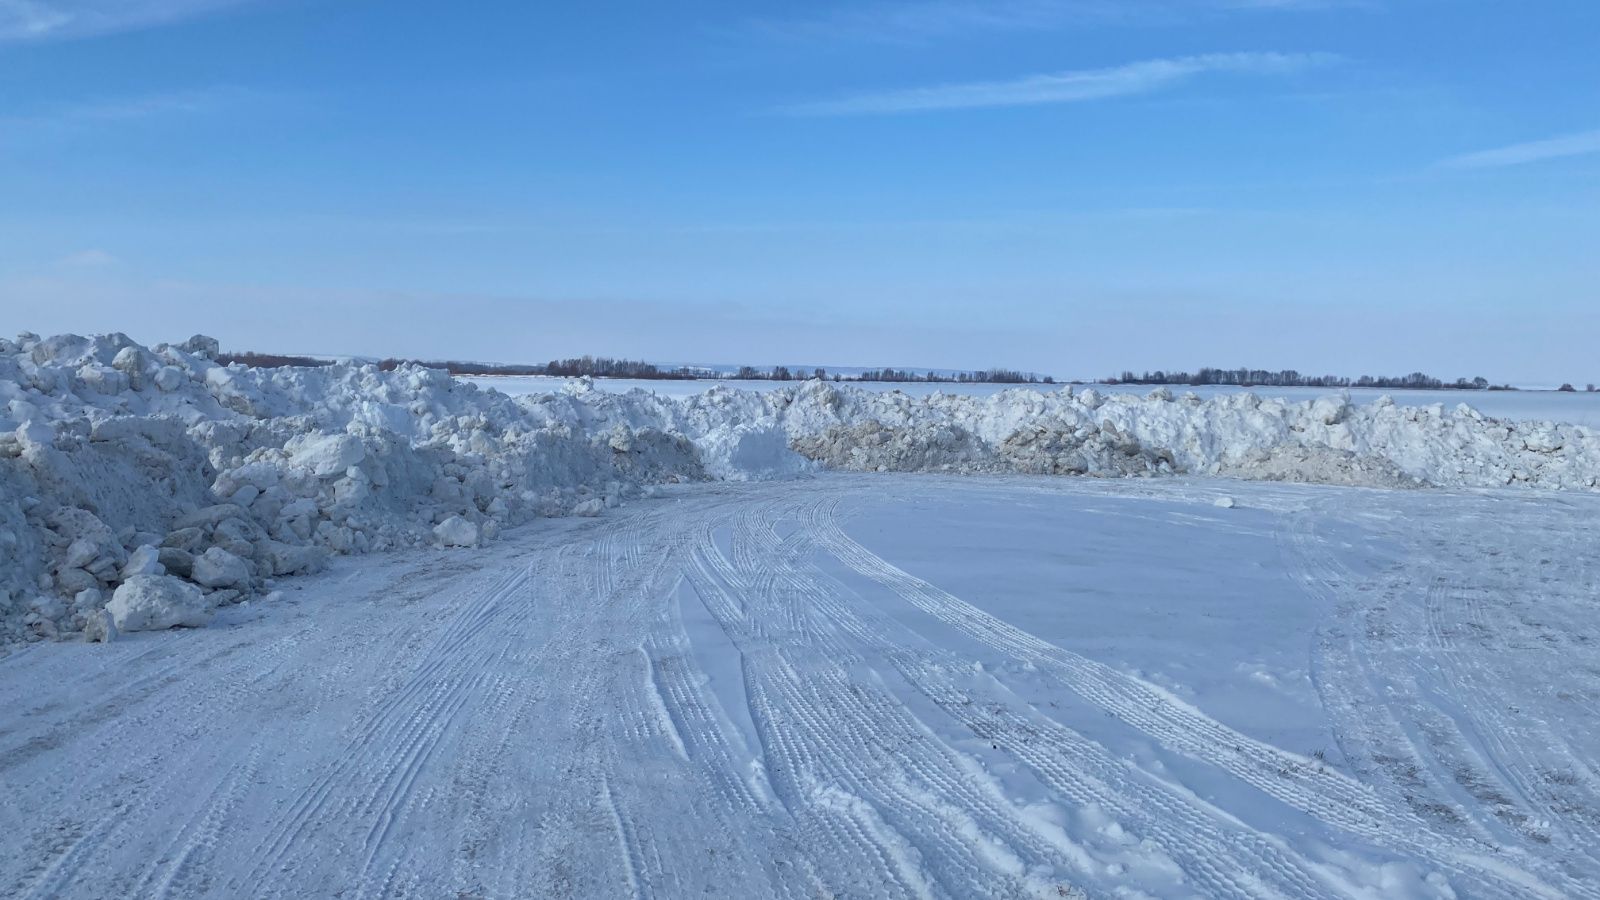 Экологи обнаружили большую незаконную свалку снега в Алексеевском районе